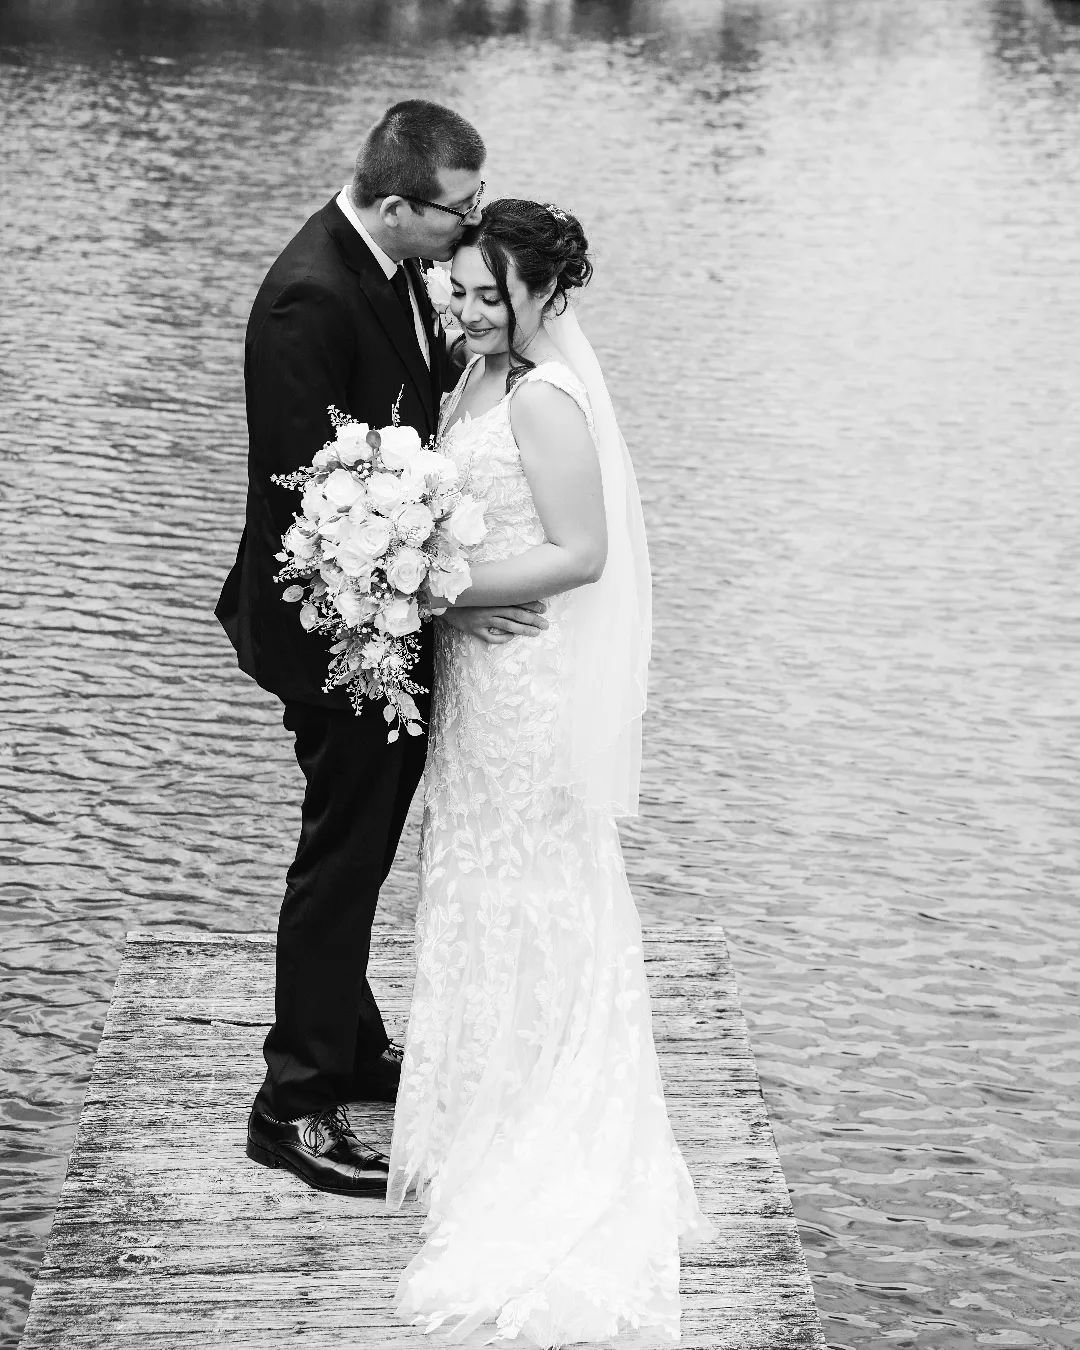 Here's a peek at a gorgeous Glasbern Inn wedding!

#paweddingphotographer 
#rusticchicwedding 
#innwedding 
#lehighvalleyweddings 
#farmwedding